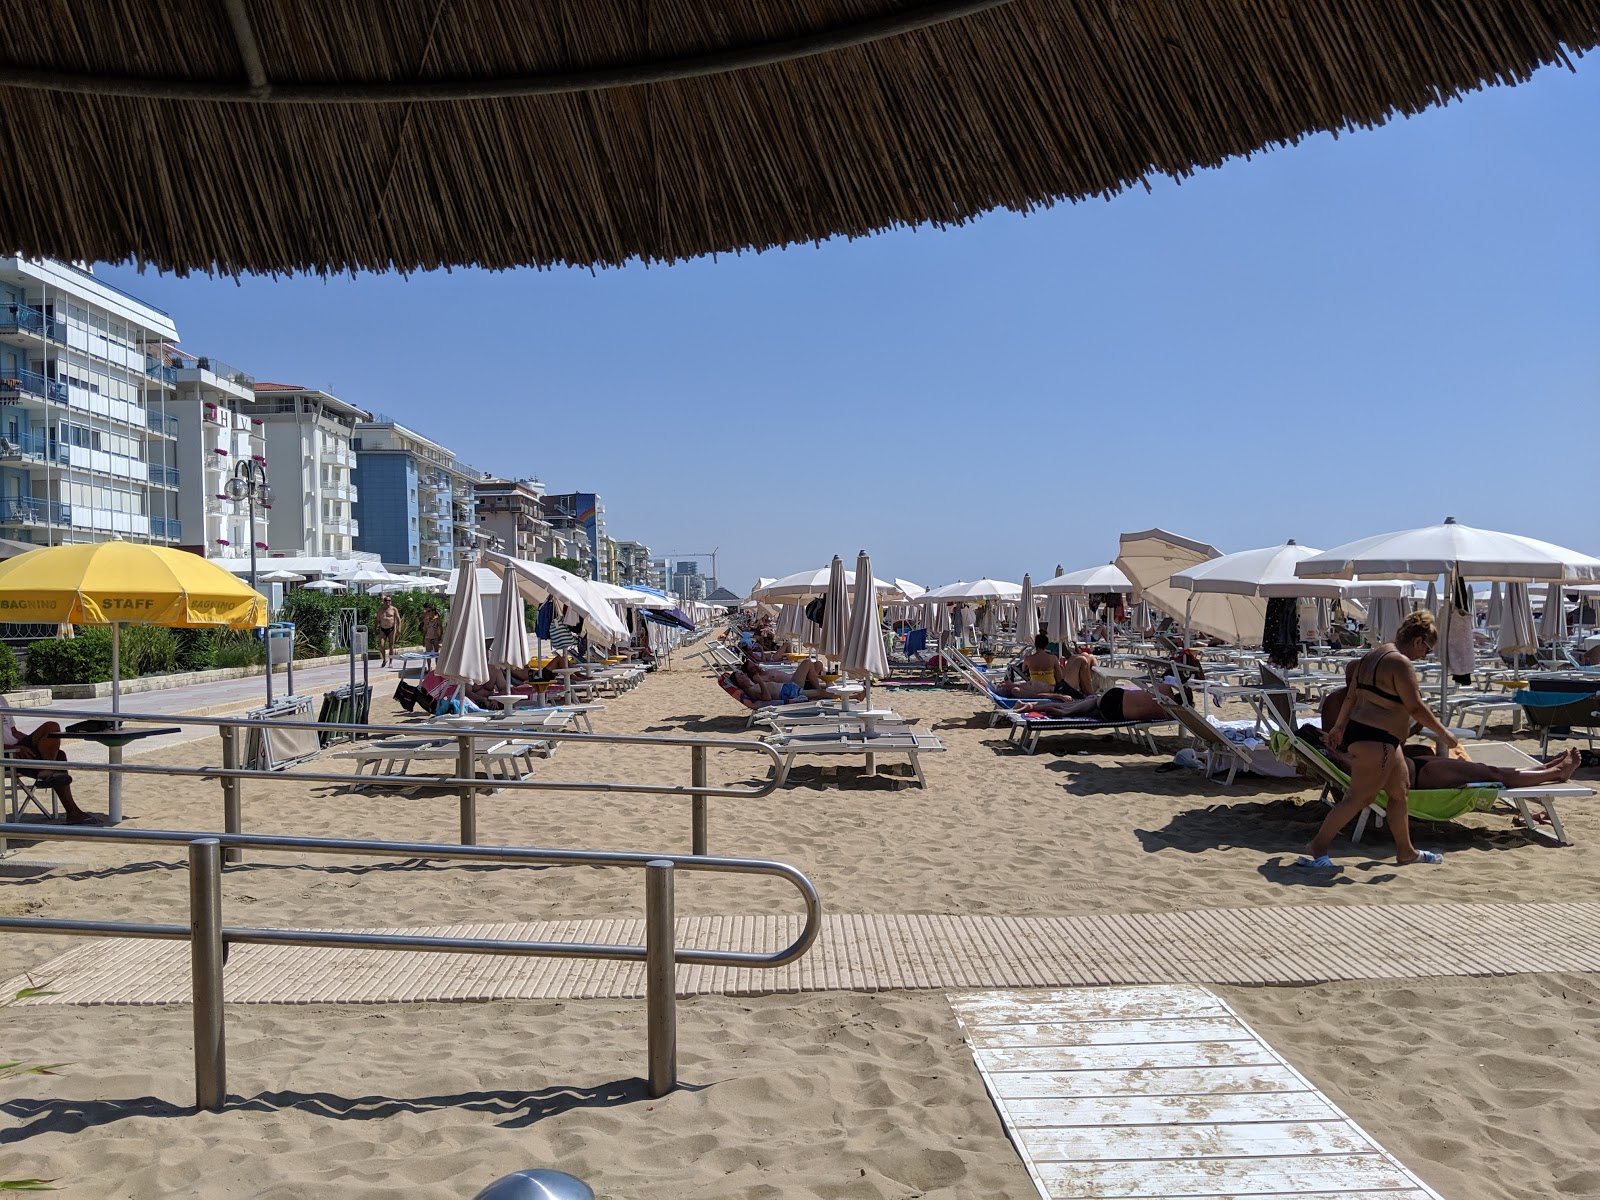 Foto af Spiaggia del Faro - populært sted blandt afslapningskendere